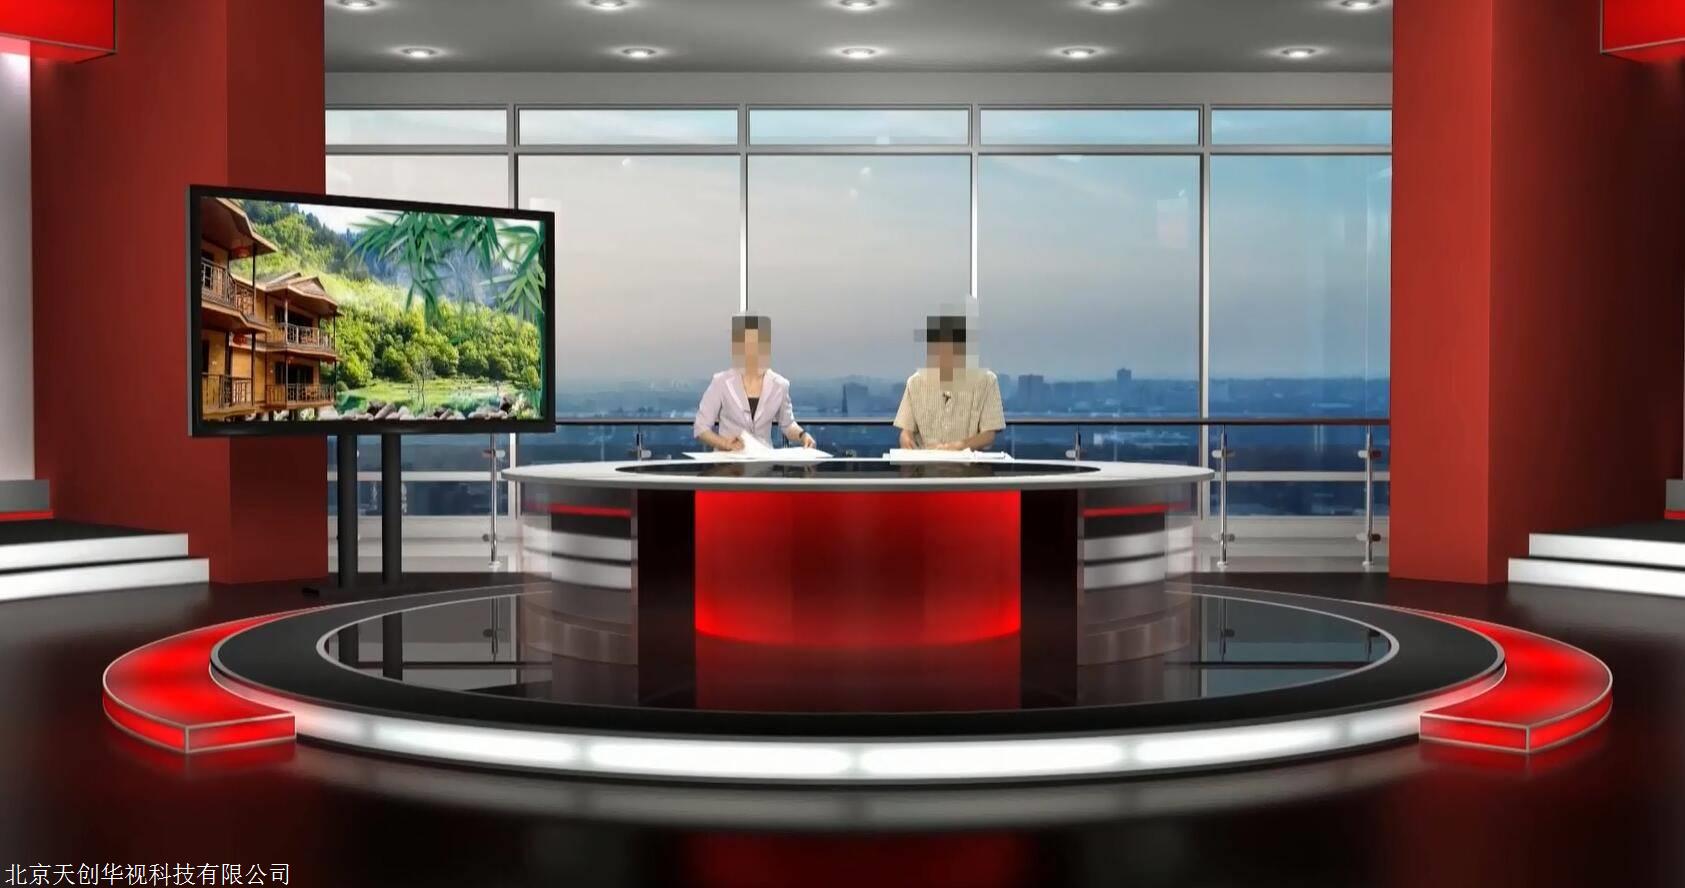 虚拟演播室设计与建设 4k高清虚拟直播间搭建